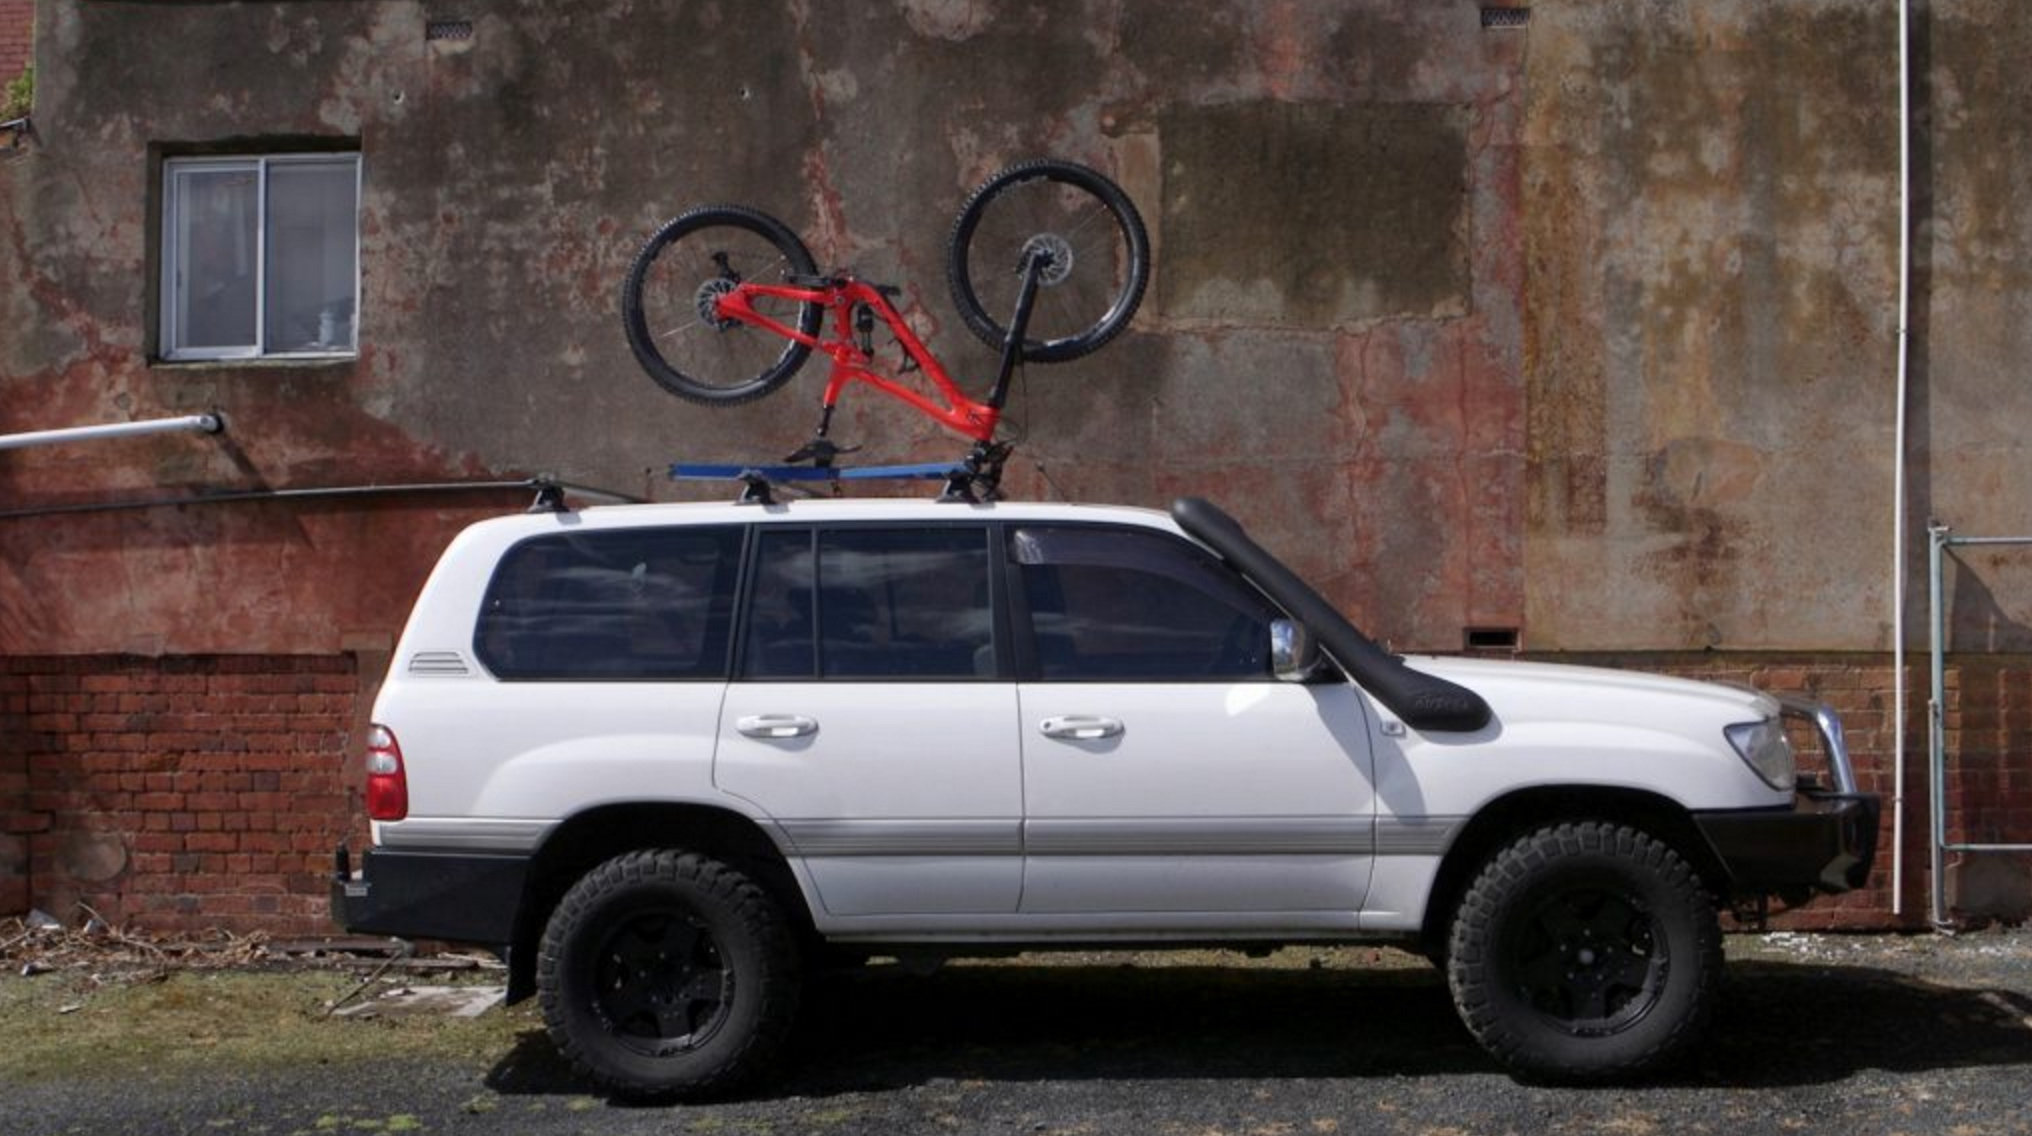 Upside Racks: Fahrrad kopfüber aufs Autodach? - MTB-News.de